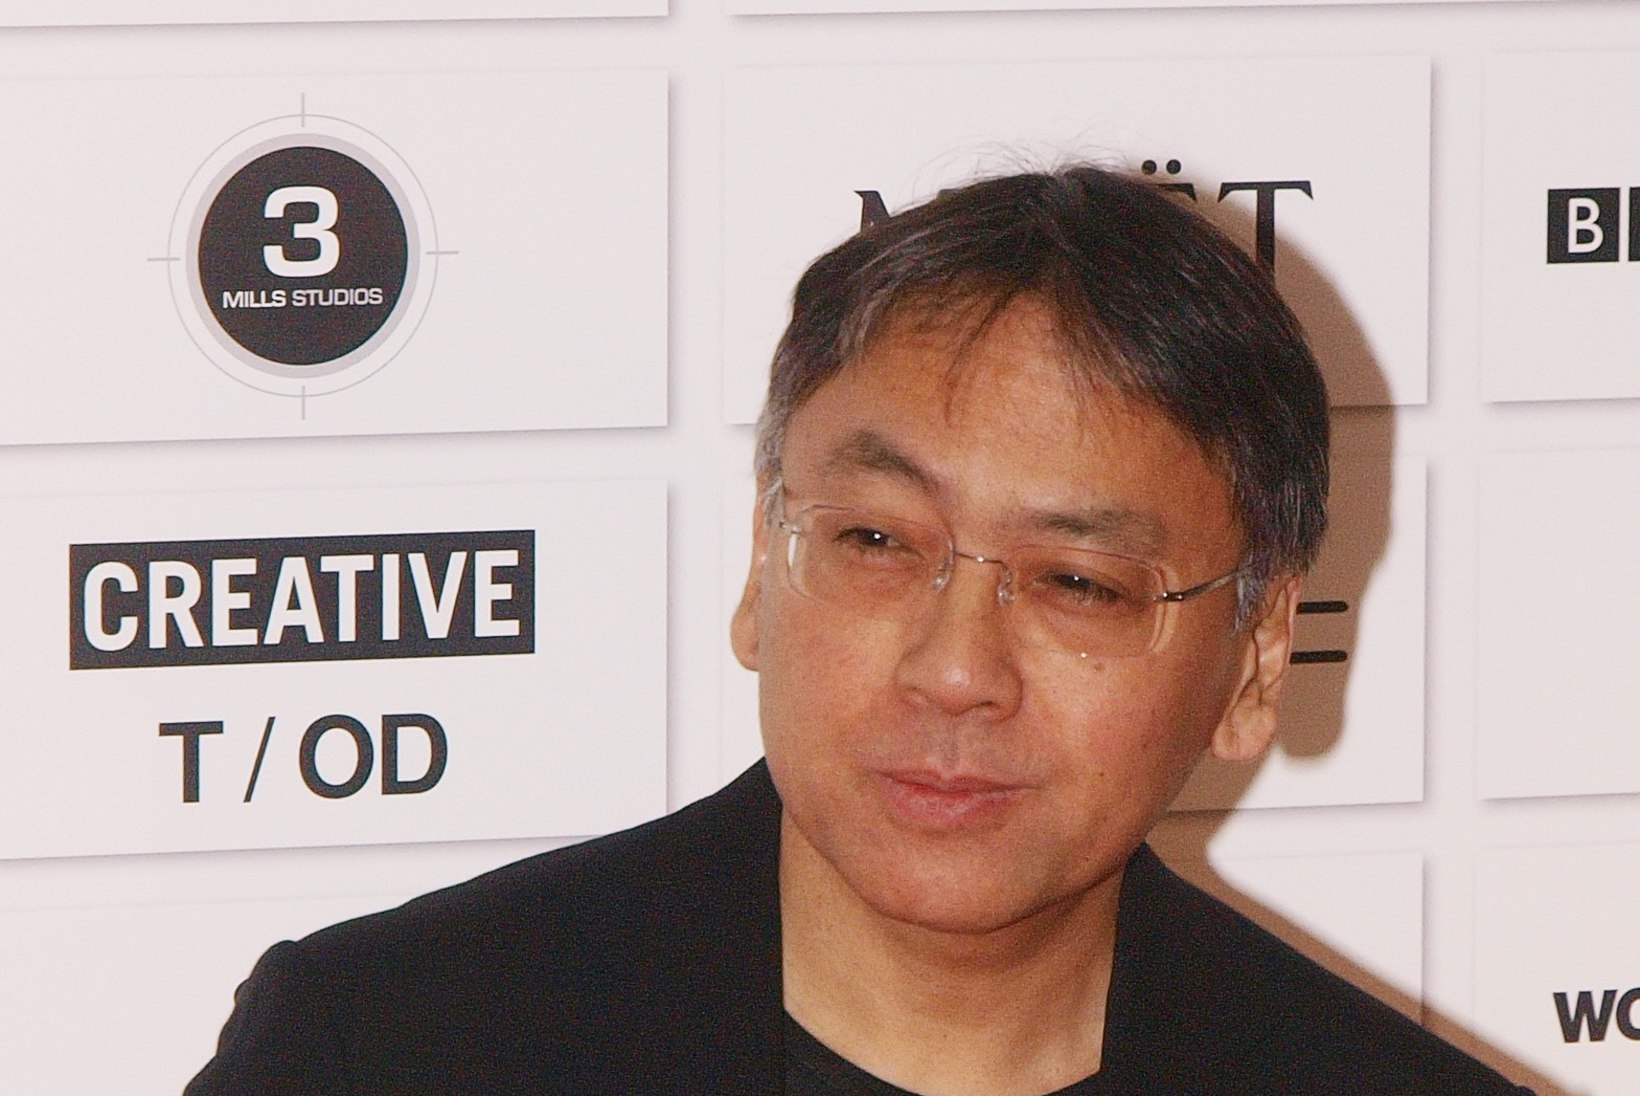 Nobeli kirjanduspreemia võitis Kazuo Ishiguro